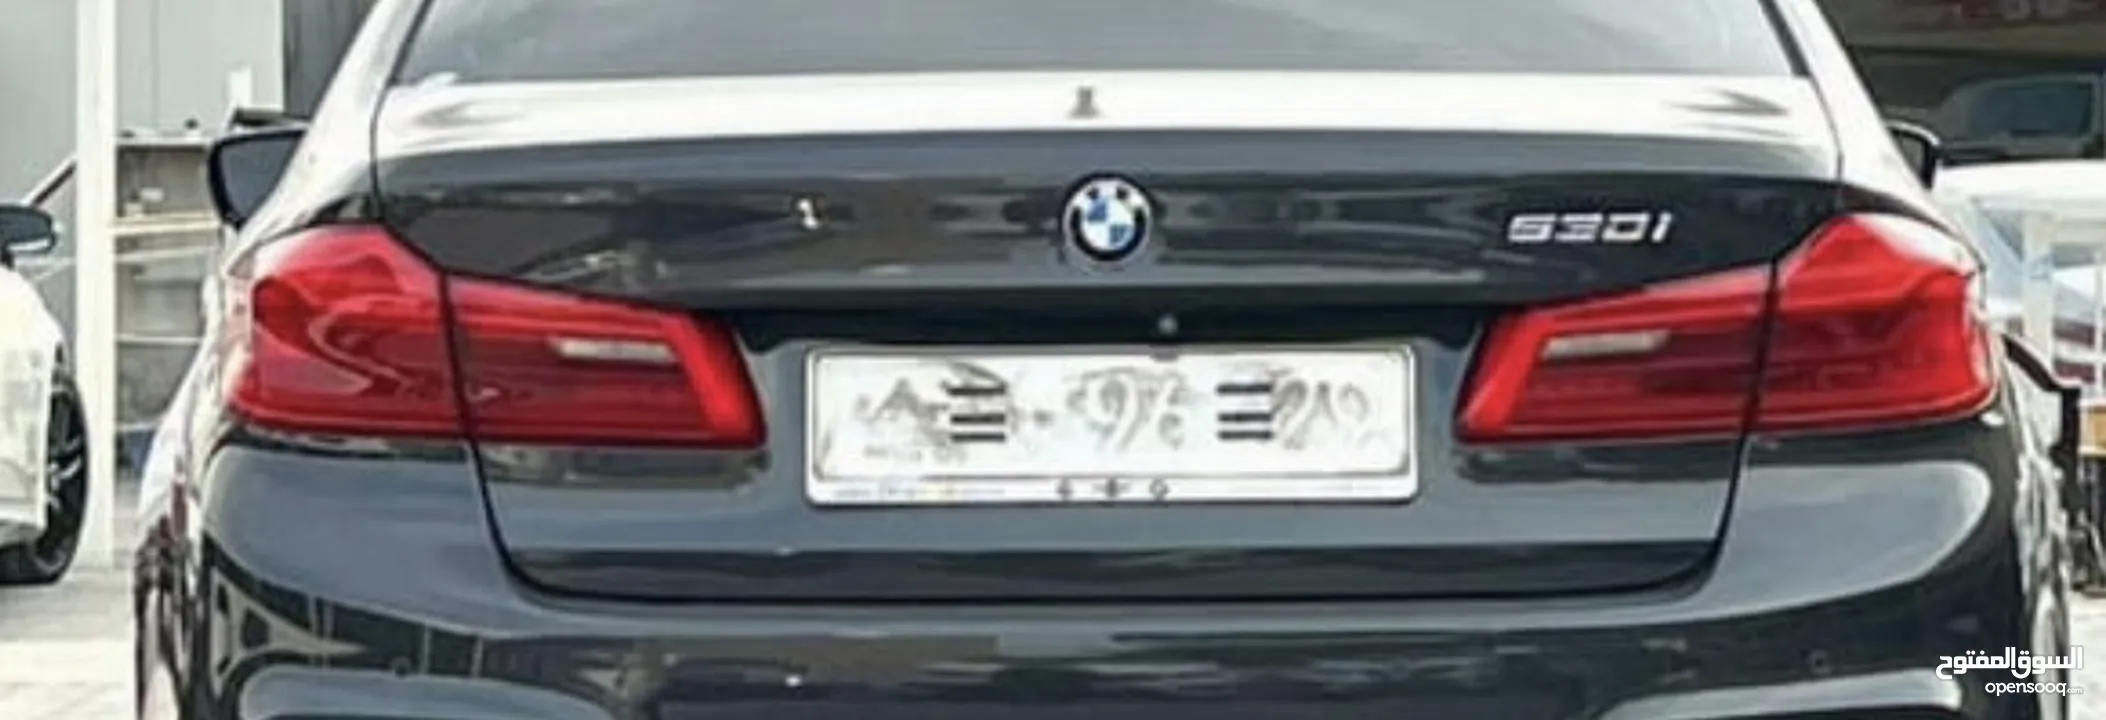 قطع غيار BMW 530